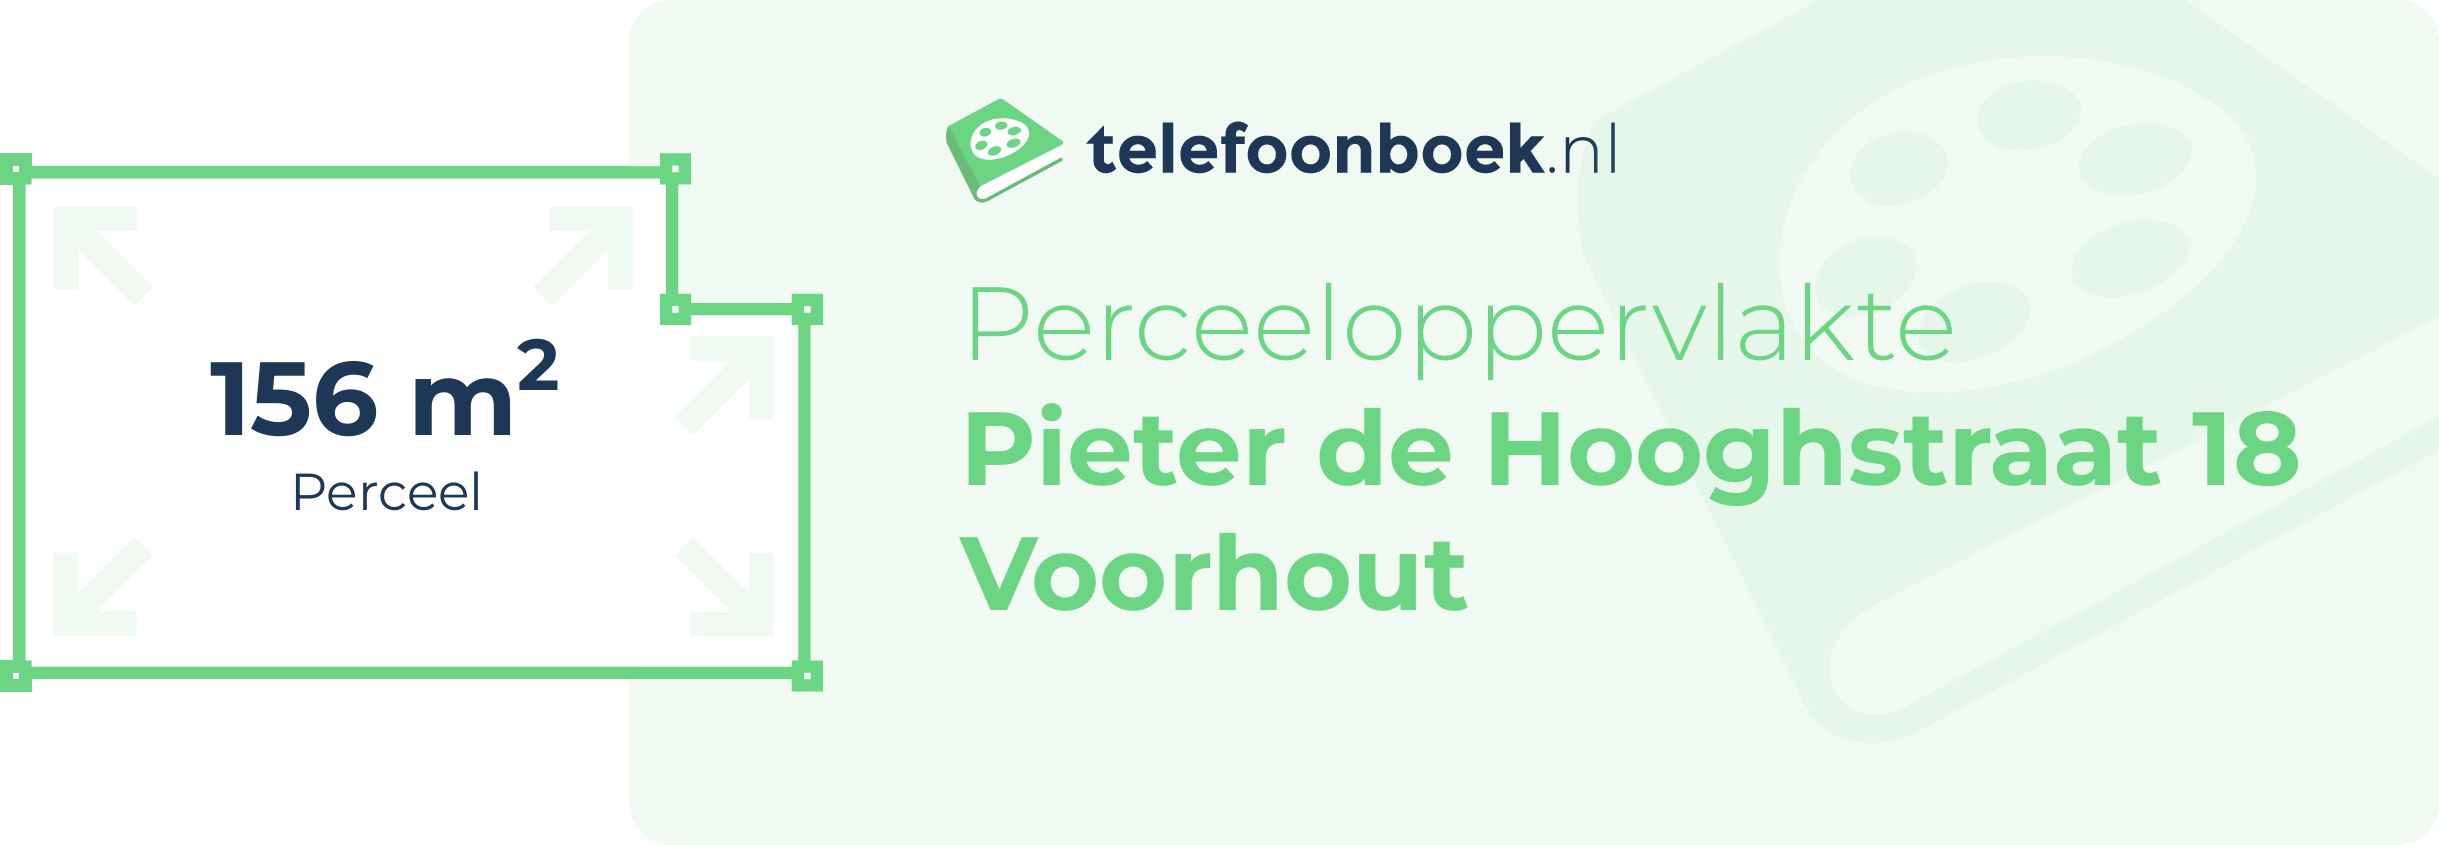 Perceeloppervlakte Pieter De Hooghstraat 18 Voorhout